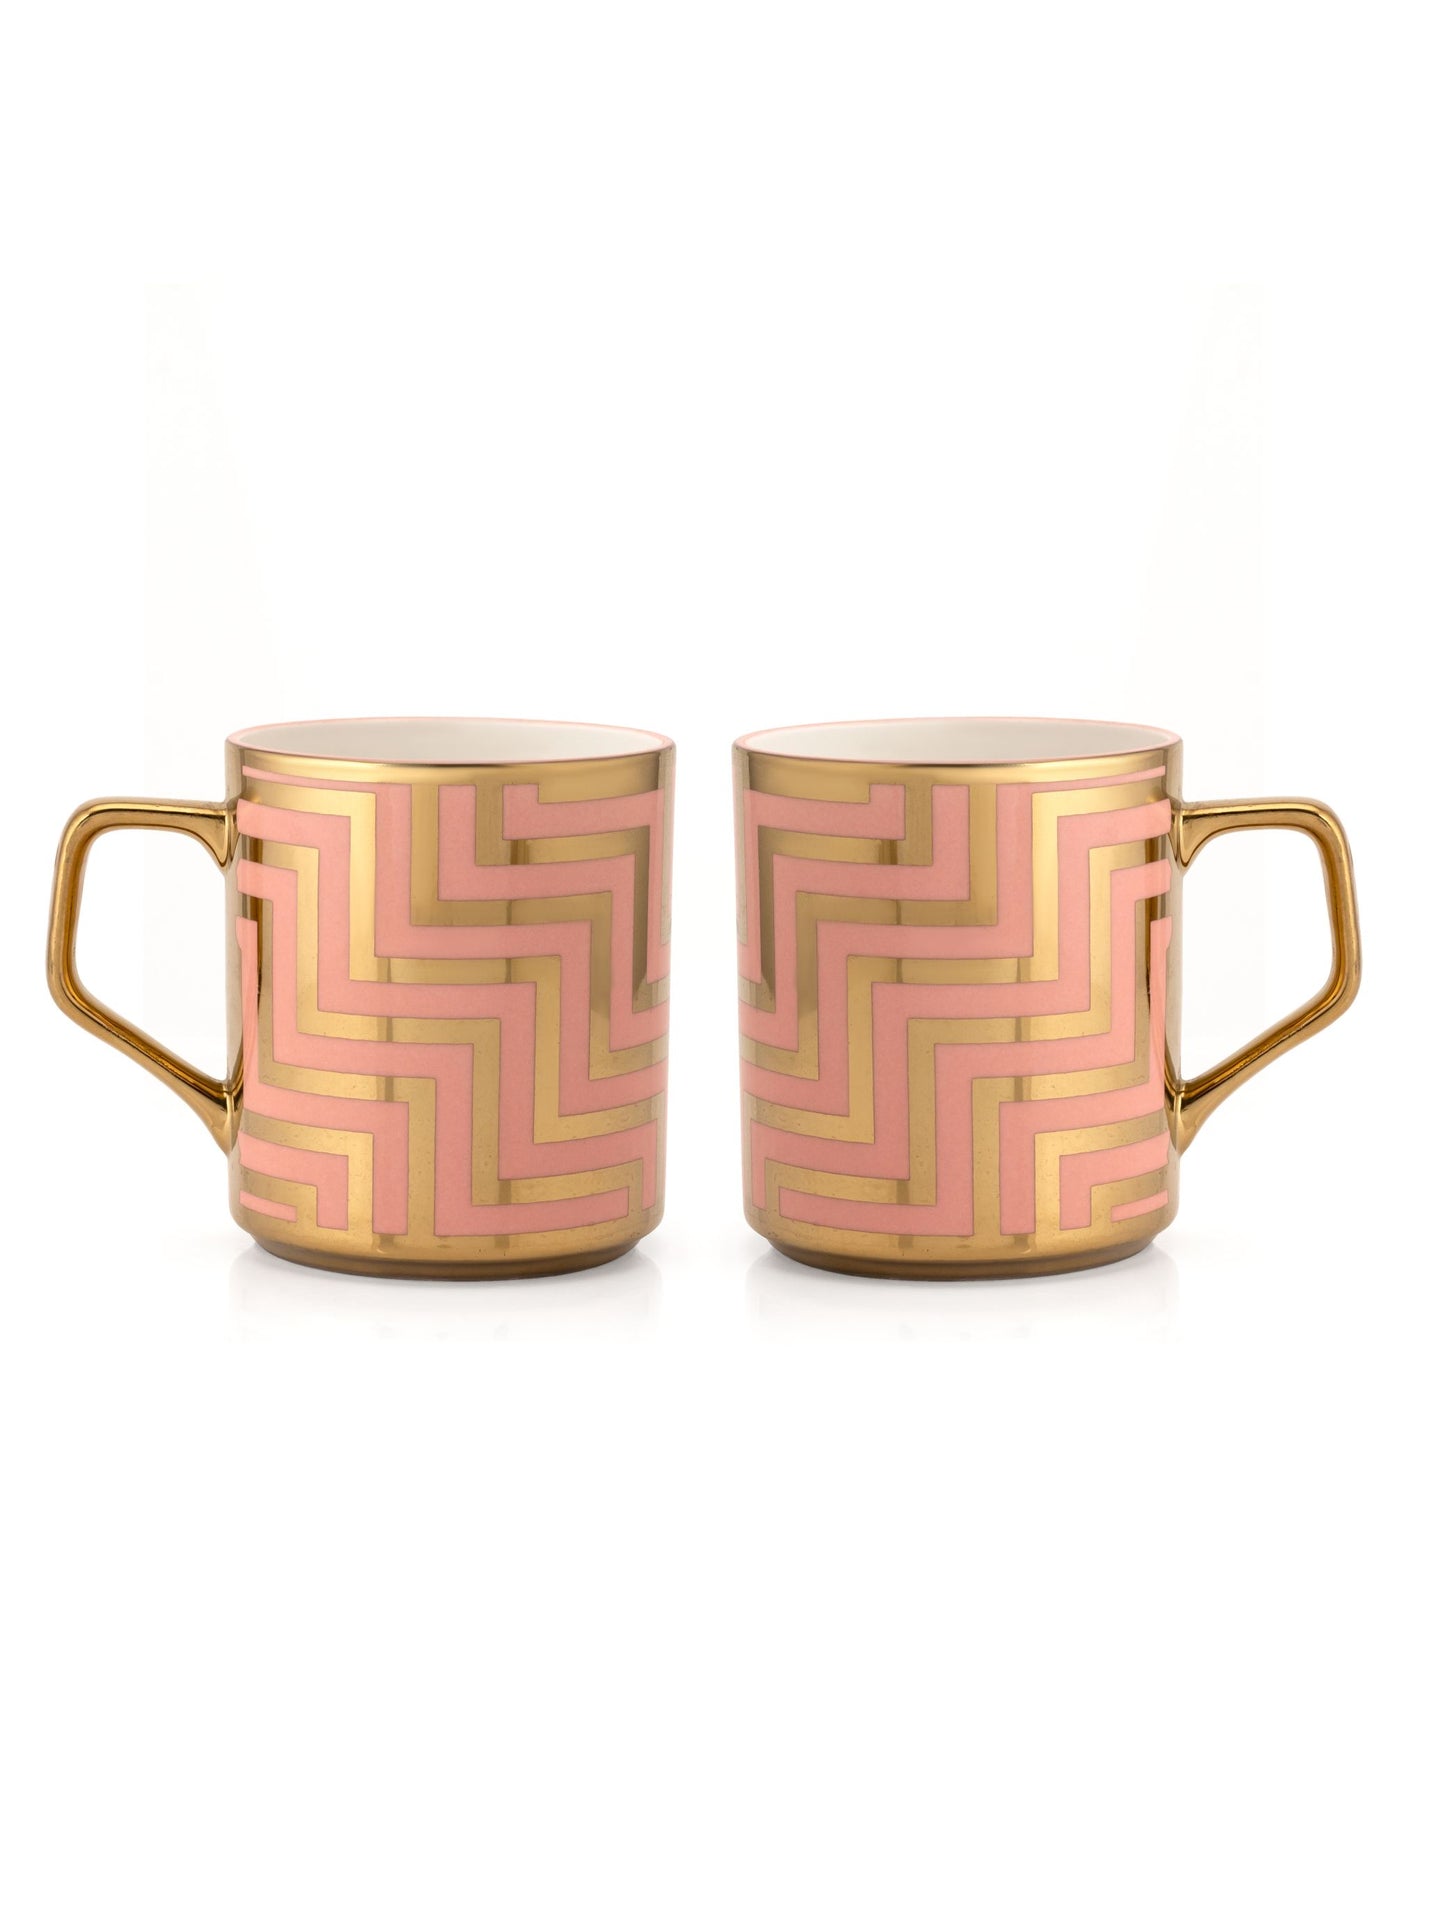 Avishka Ebony Coffee & Tea Mugs, 240ml, Set of 6 (E601)